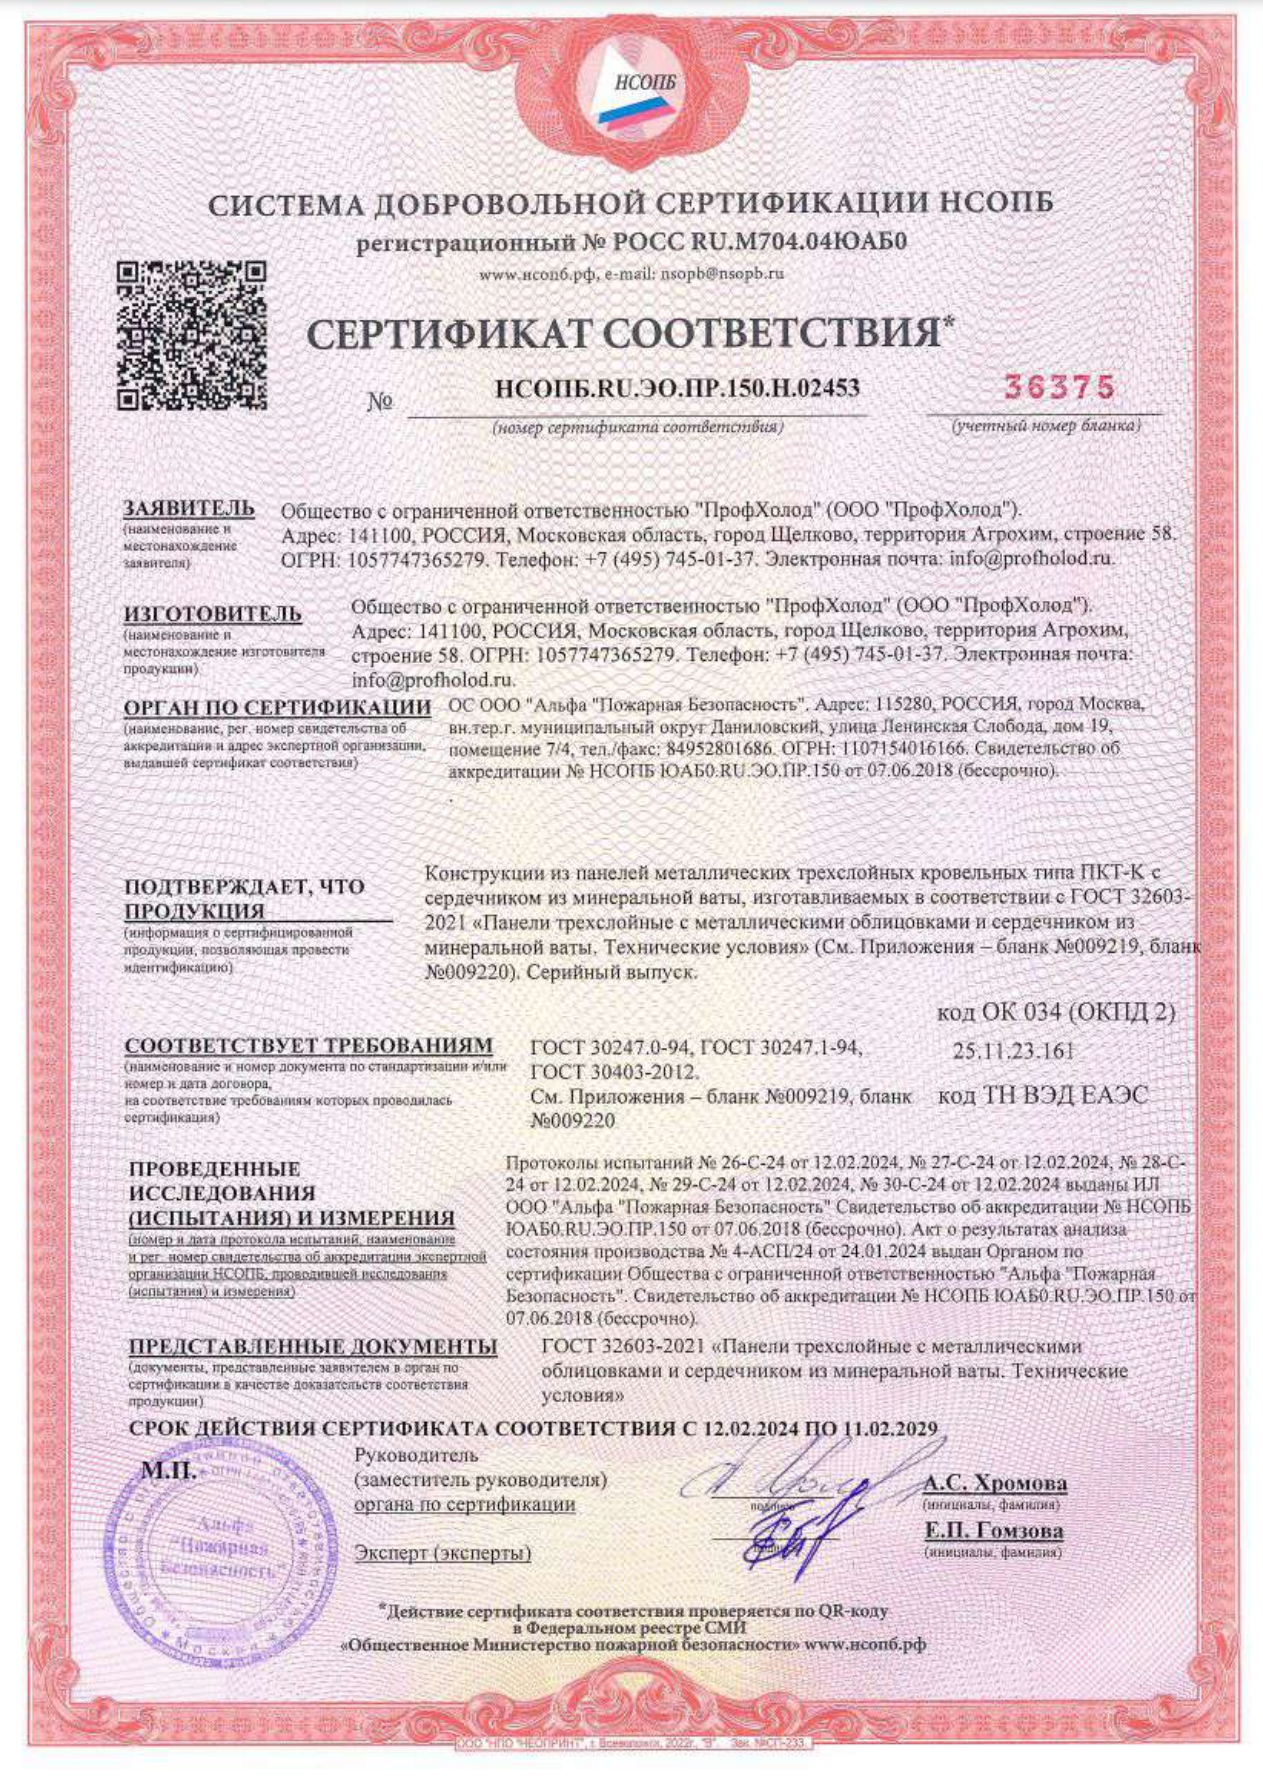  Сертификат соответствия на сэндвич-панели кровельные с утеплителем из минеральной ваты MW ПКТ. Соответствуют требованиям ГОСТ 30247.0-94, ГОСТ 30247.1-94, ГОСТ 30403-2012